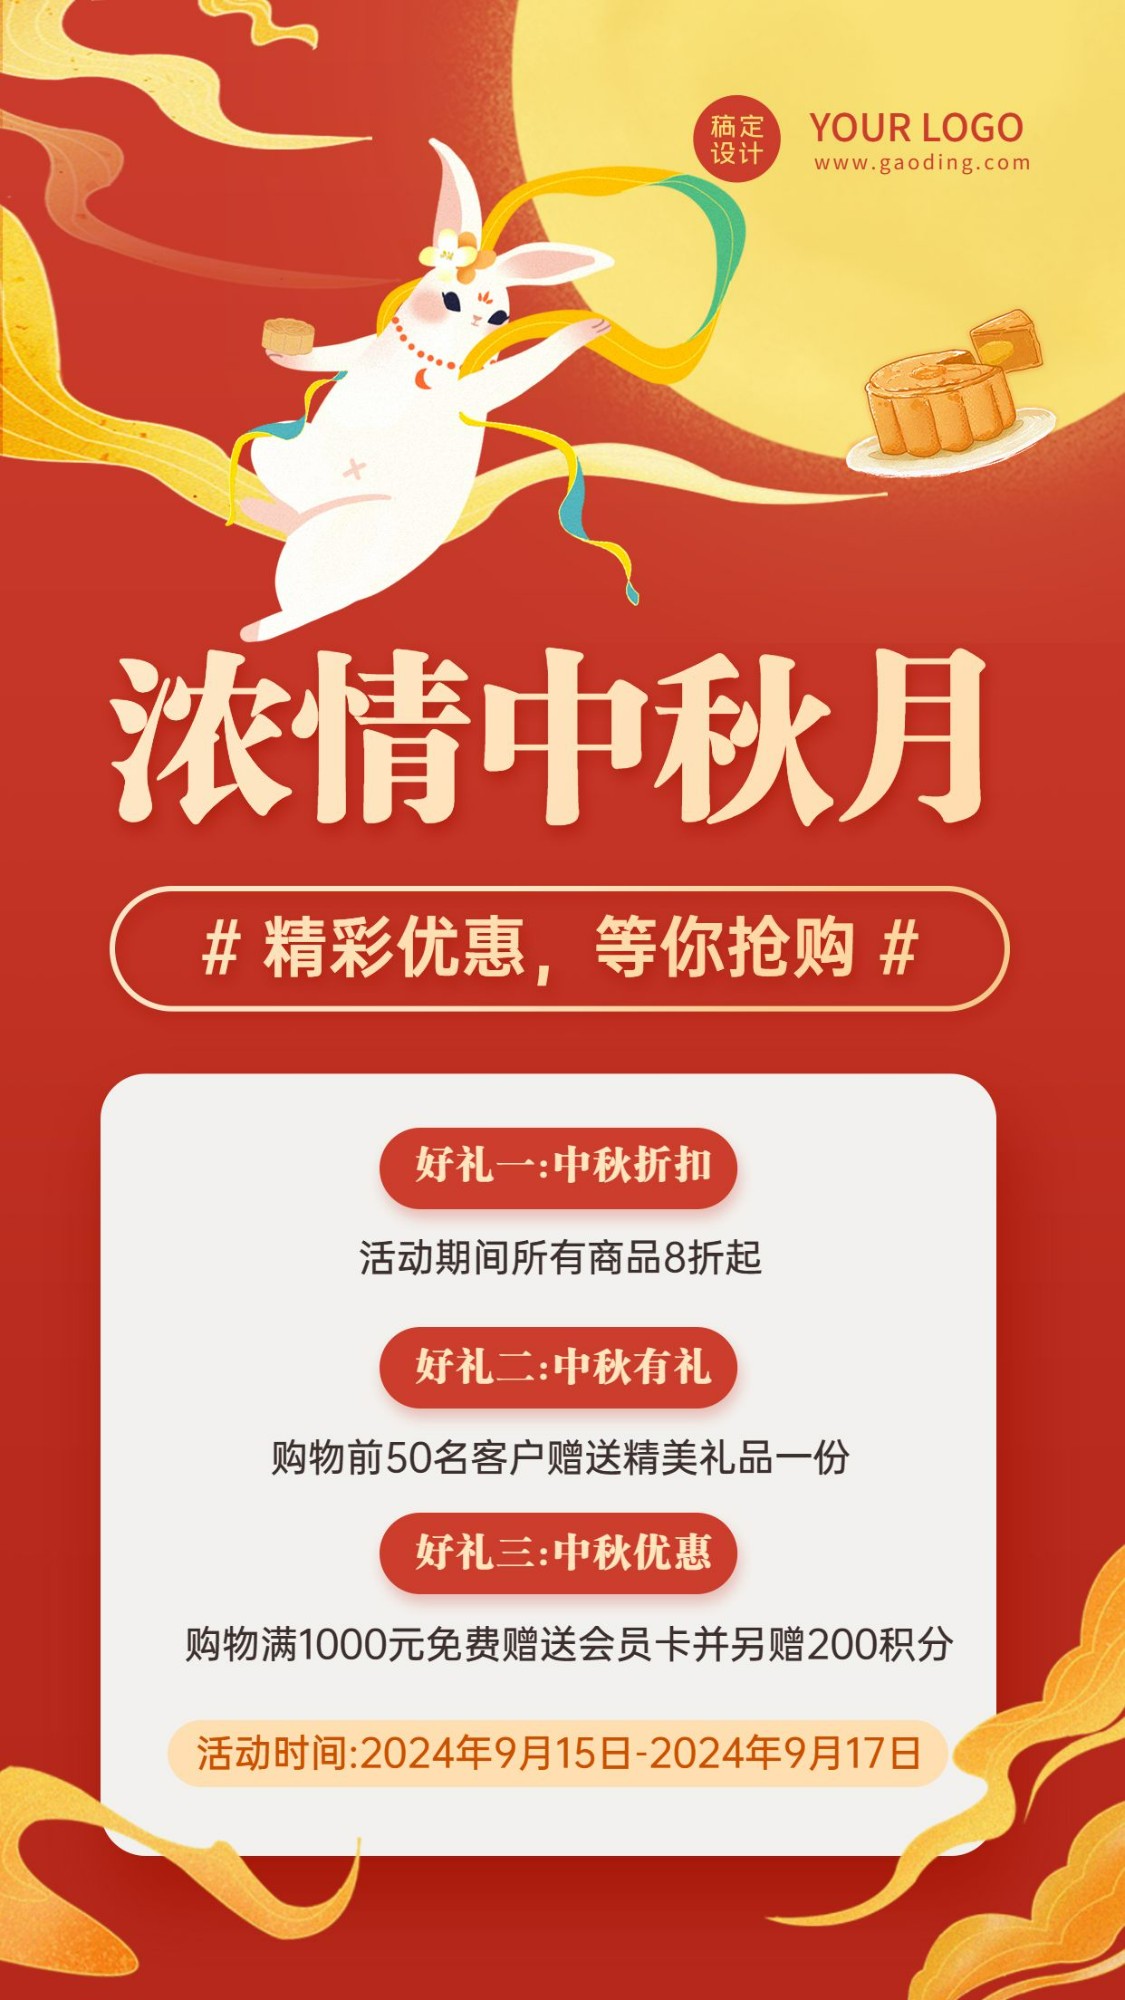 中秋节快乐活动促销营销手机海报预览效果